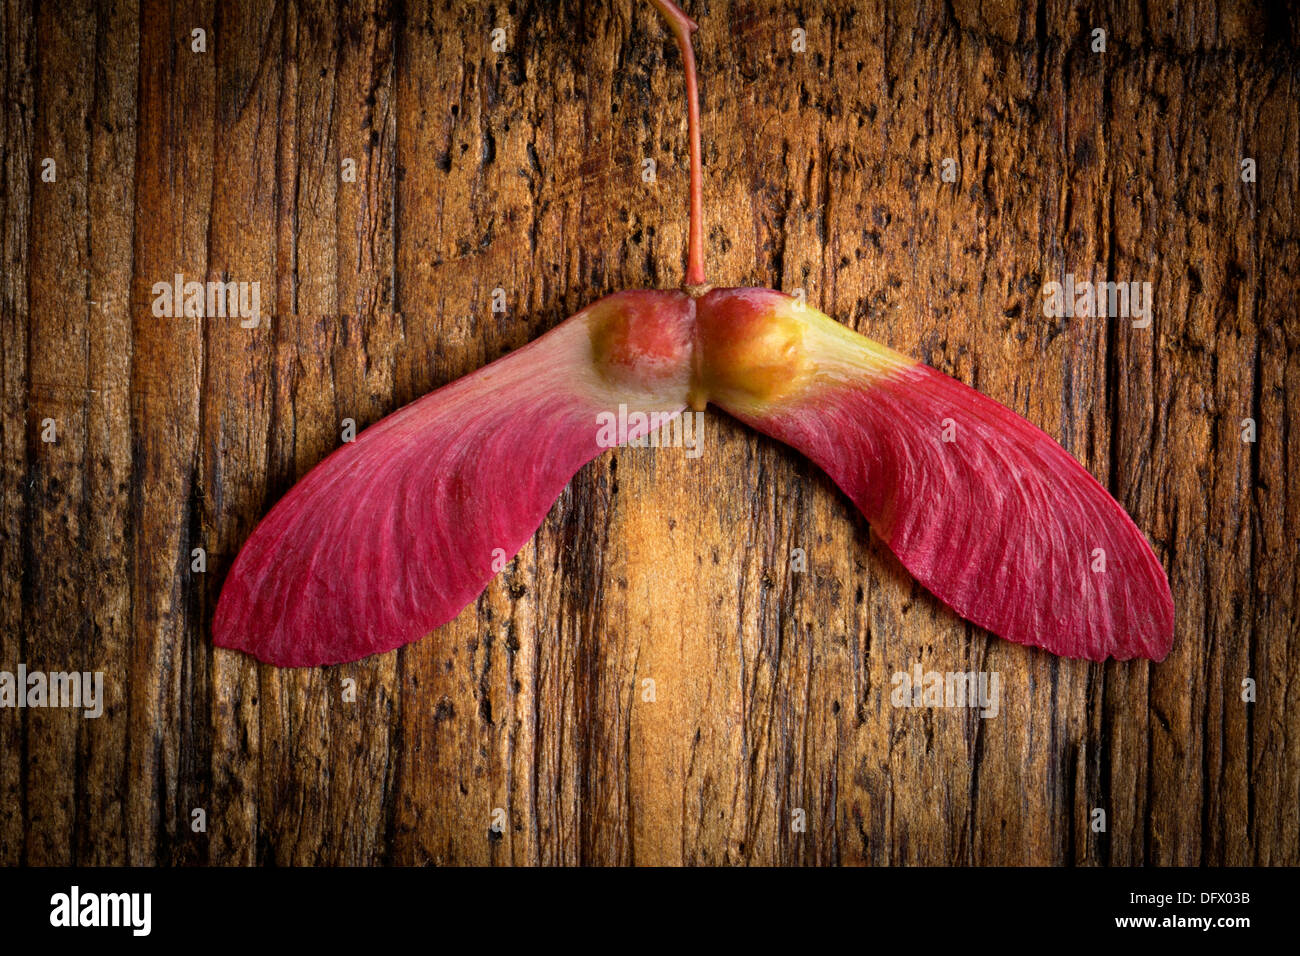 Trat ein Hubschrauber Samen, die von einem roten japanischen Ahorn-Baum im Herbst auf rustikalen Holzbrett gefallen haben. Liebe-Konzept Stockfoto